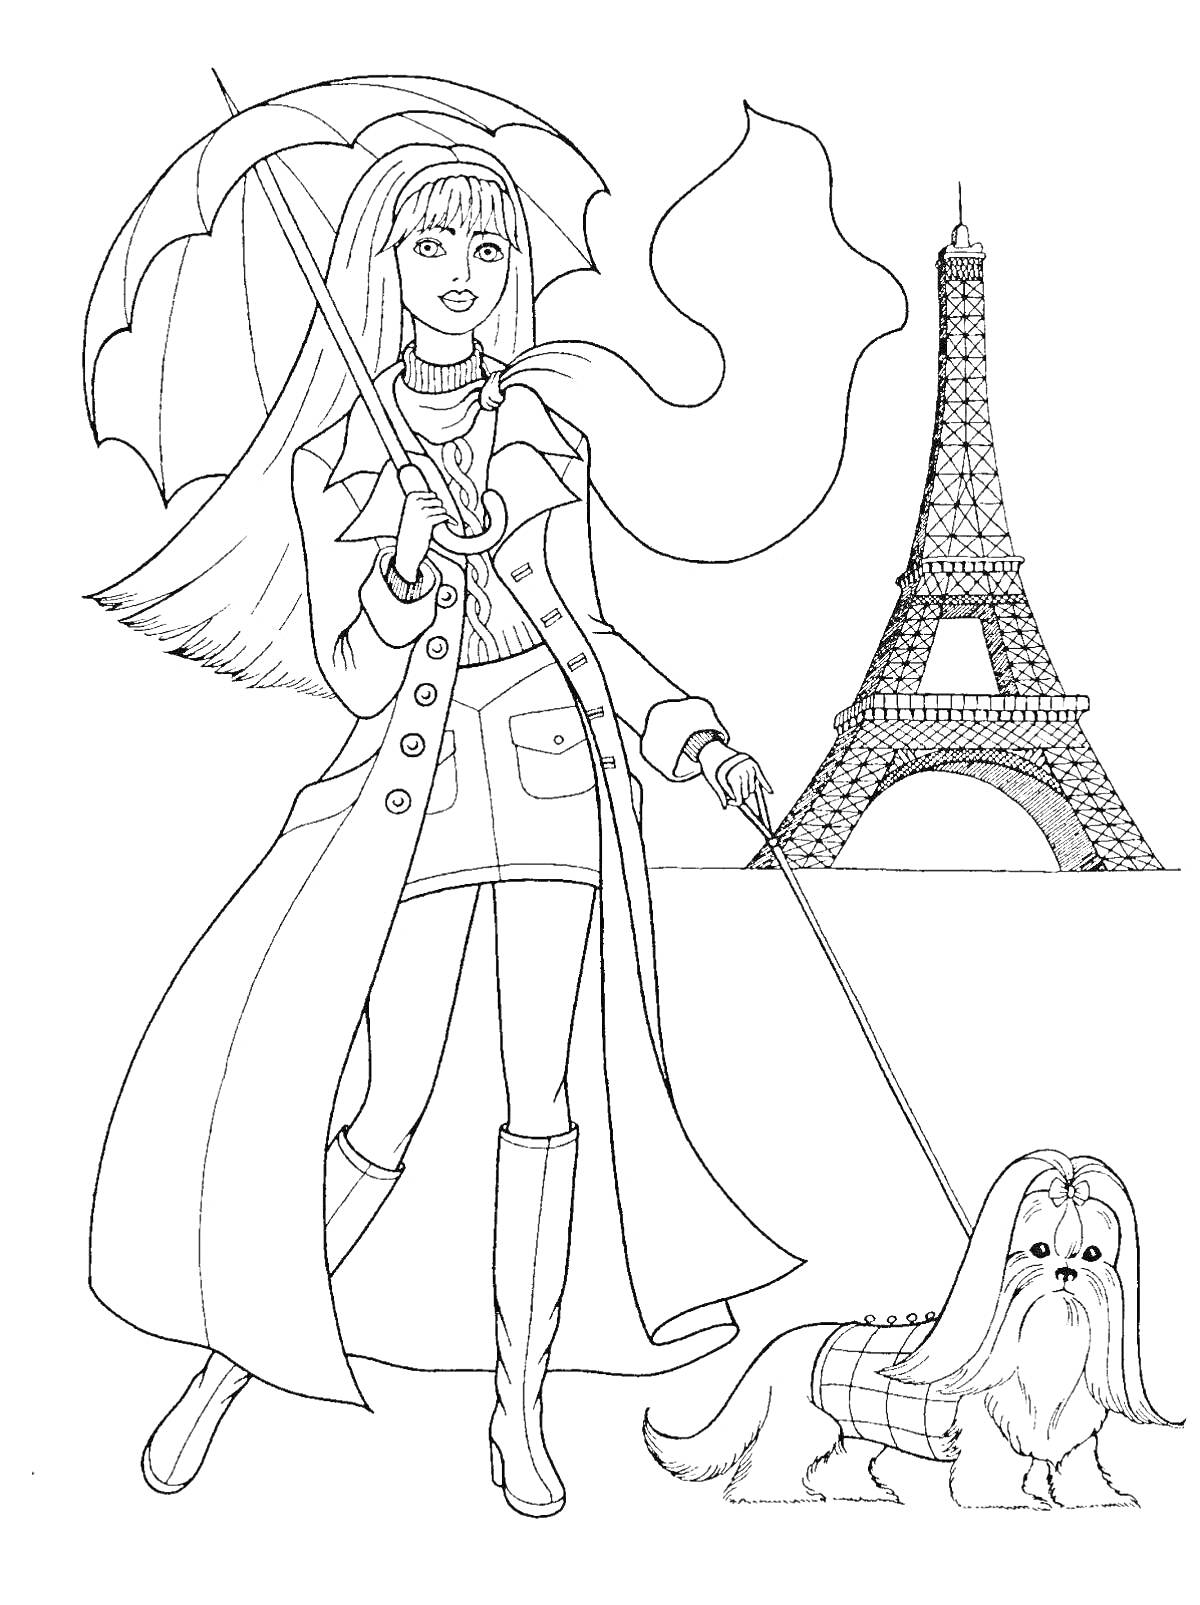 Девочка с зонтиком и собачкой на фоне Эйфелевой башни